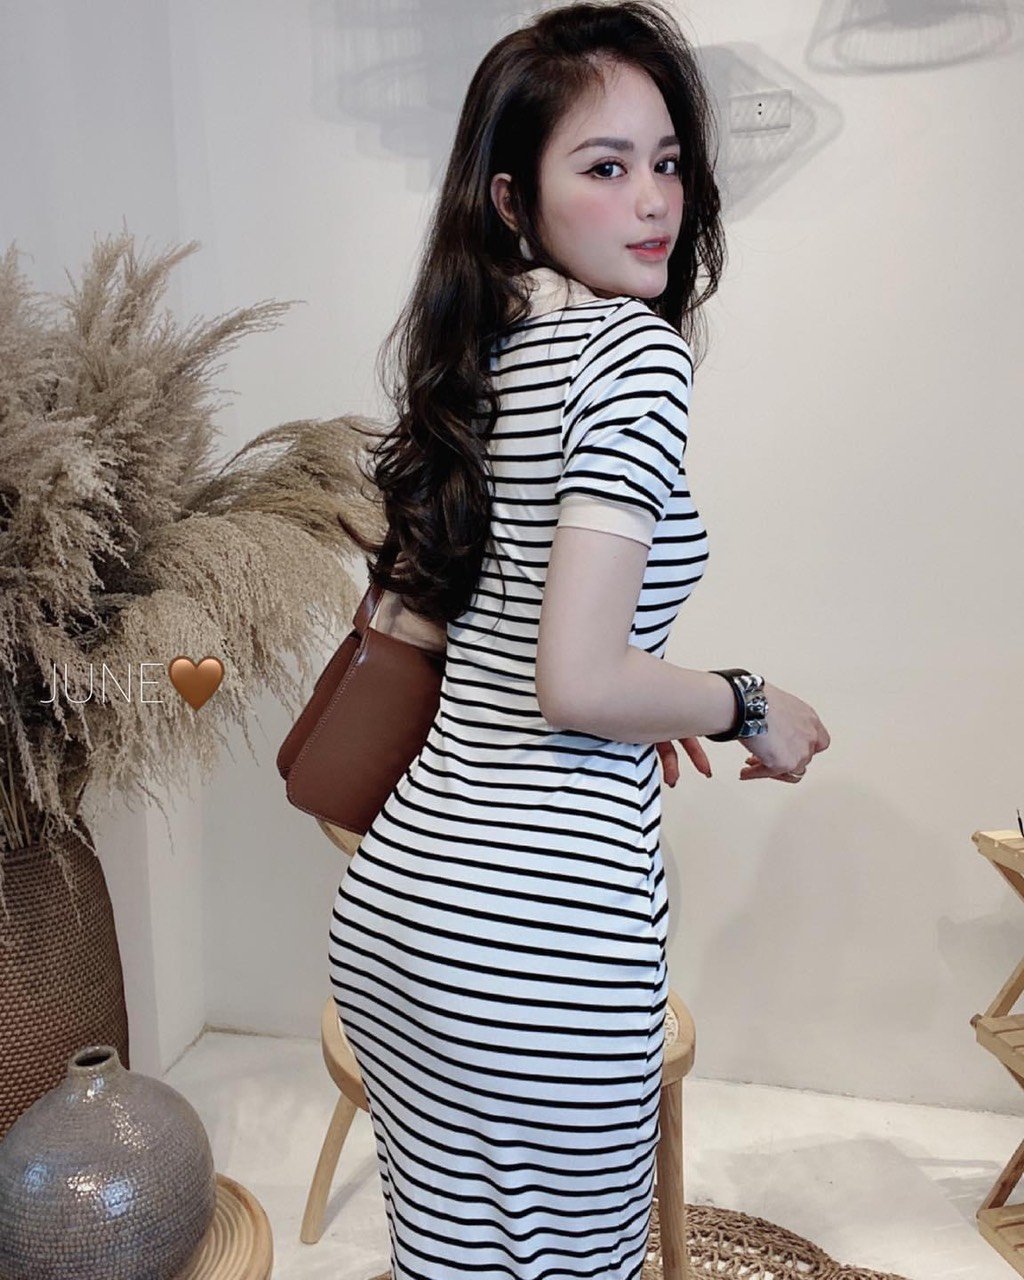 Mua Online ĐƯỢC KIỂM HÀNG Váy polo siêu Hot Chất Monterghi Tăm siêu giãn  ôm body hàng Quảng Châu  giá sỉ chỉ 247706 đ